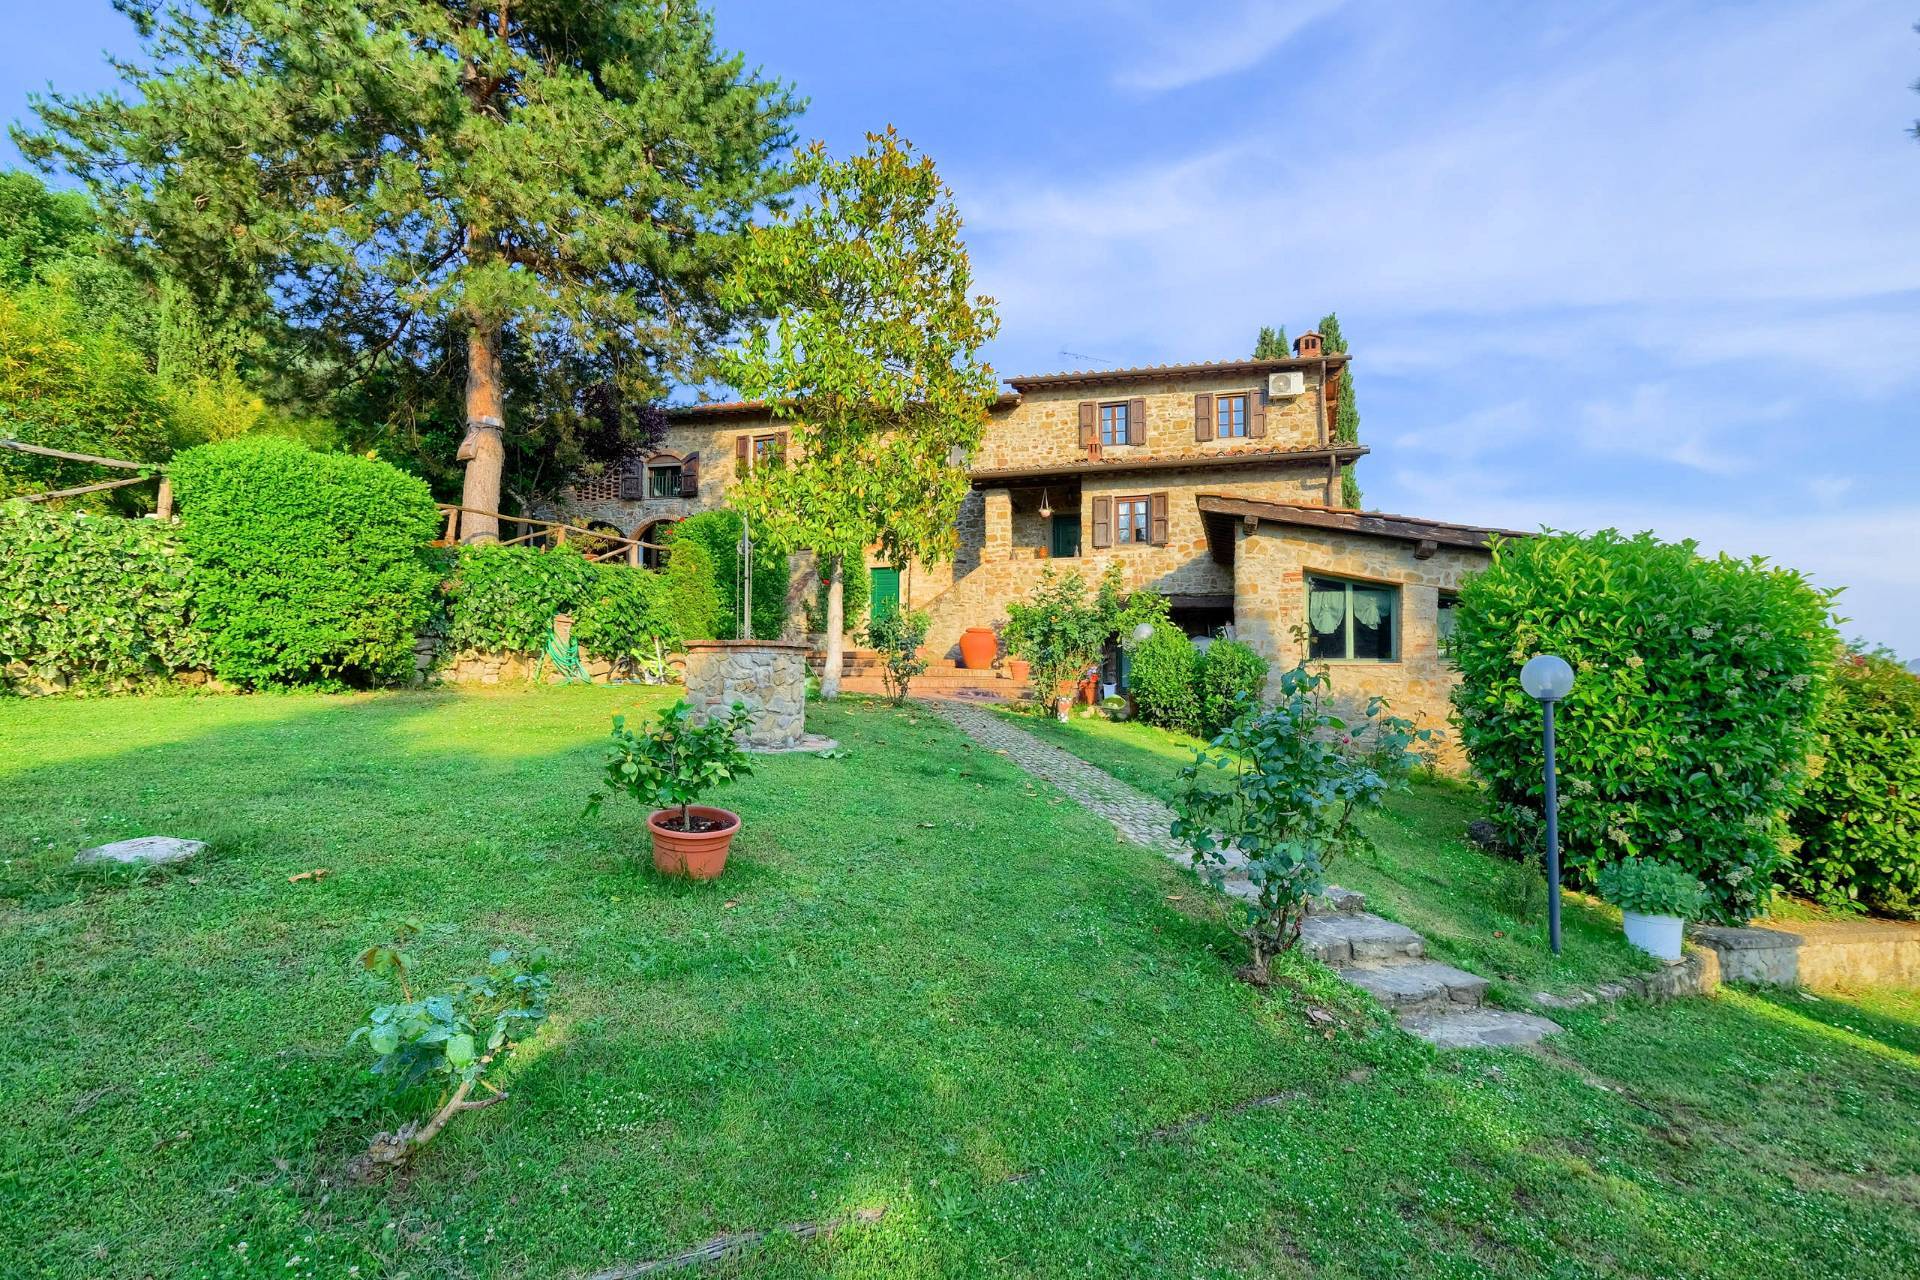 1477-Casale in stile Toscano con parco piscina e dependance in zona panoramica-Reggello-1 Agenzia Immobiliare ASIP